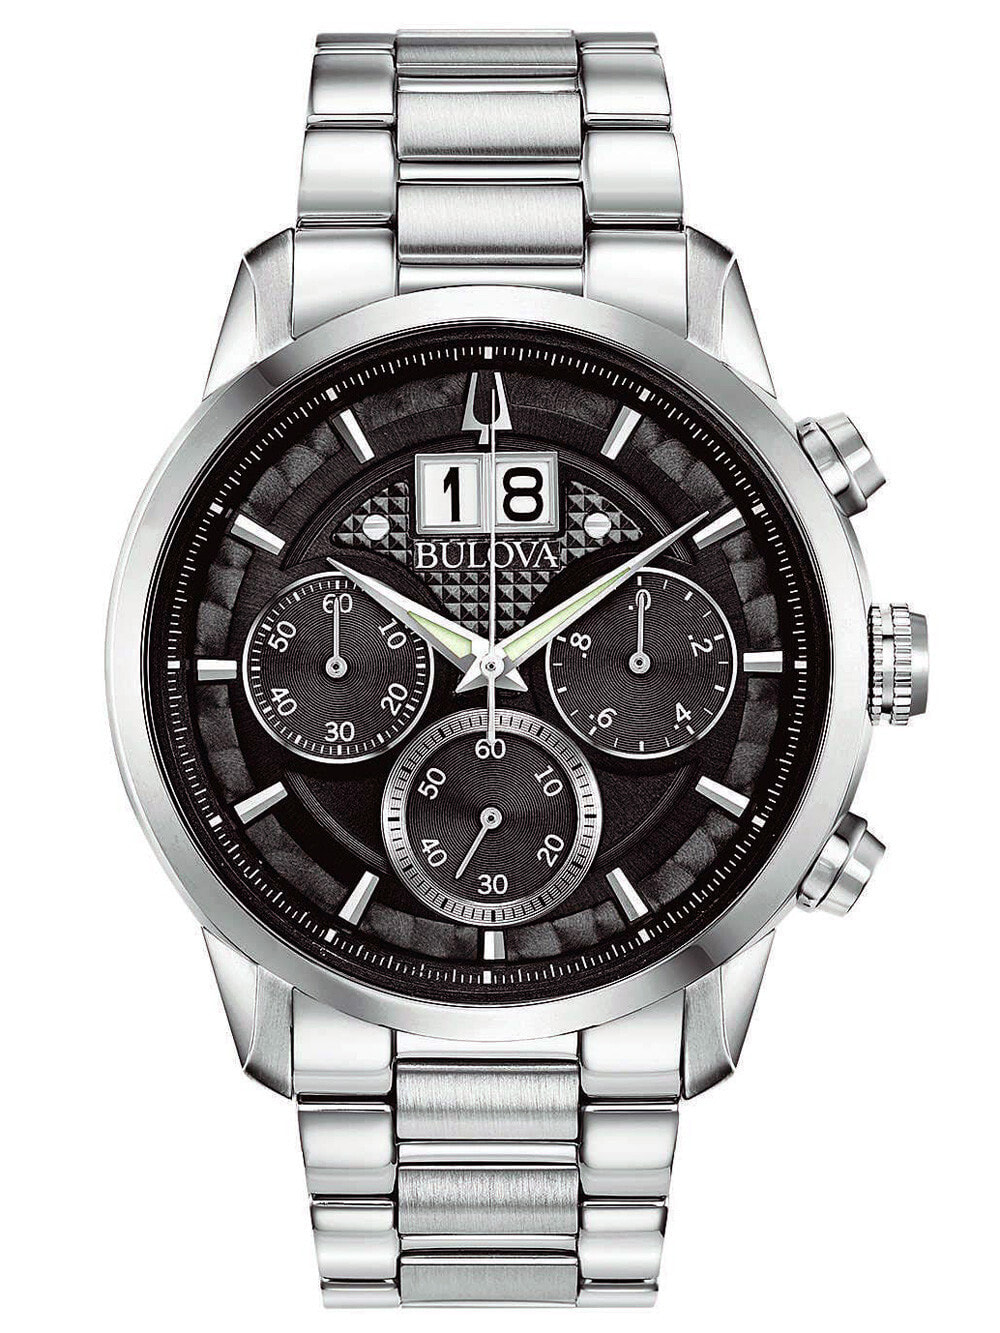 Мужские наручные часы с серебряным браслетом Bulova 96B319 Sutton Classic Chronograph 44mm 3ATM